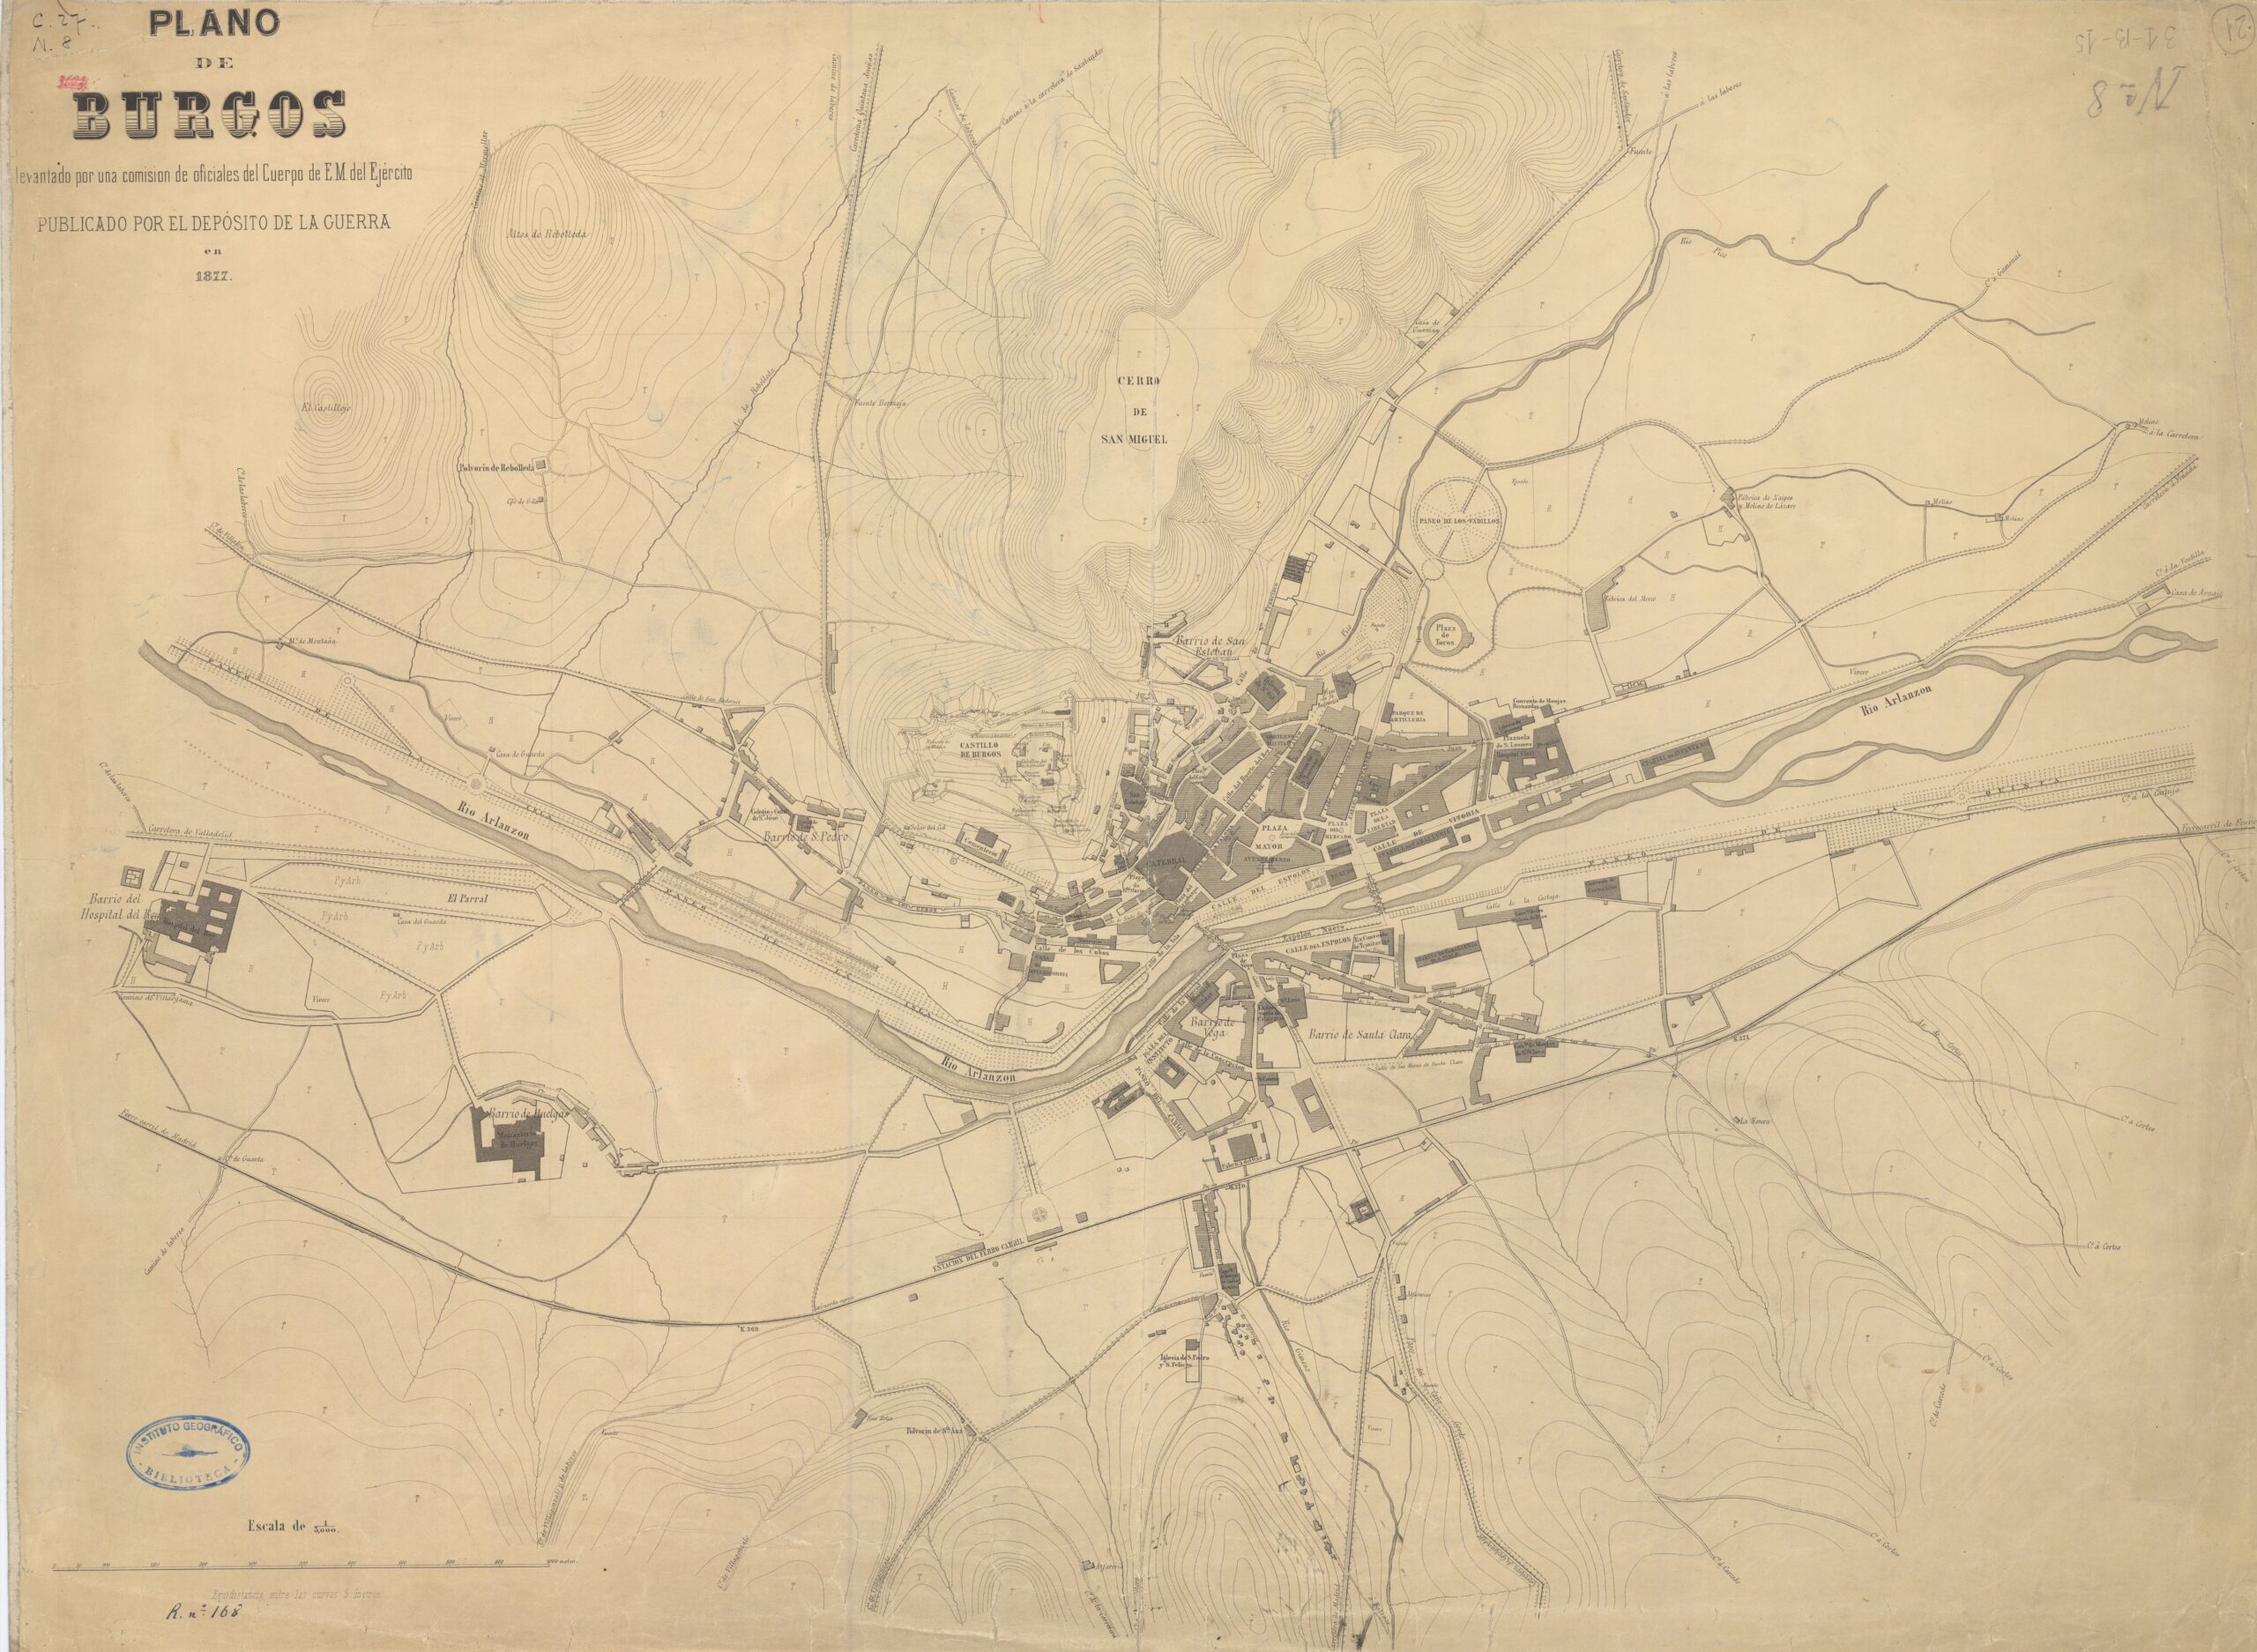 Plano de Burgos y alrededores (1867)